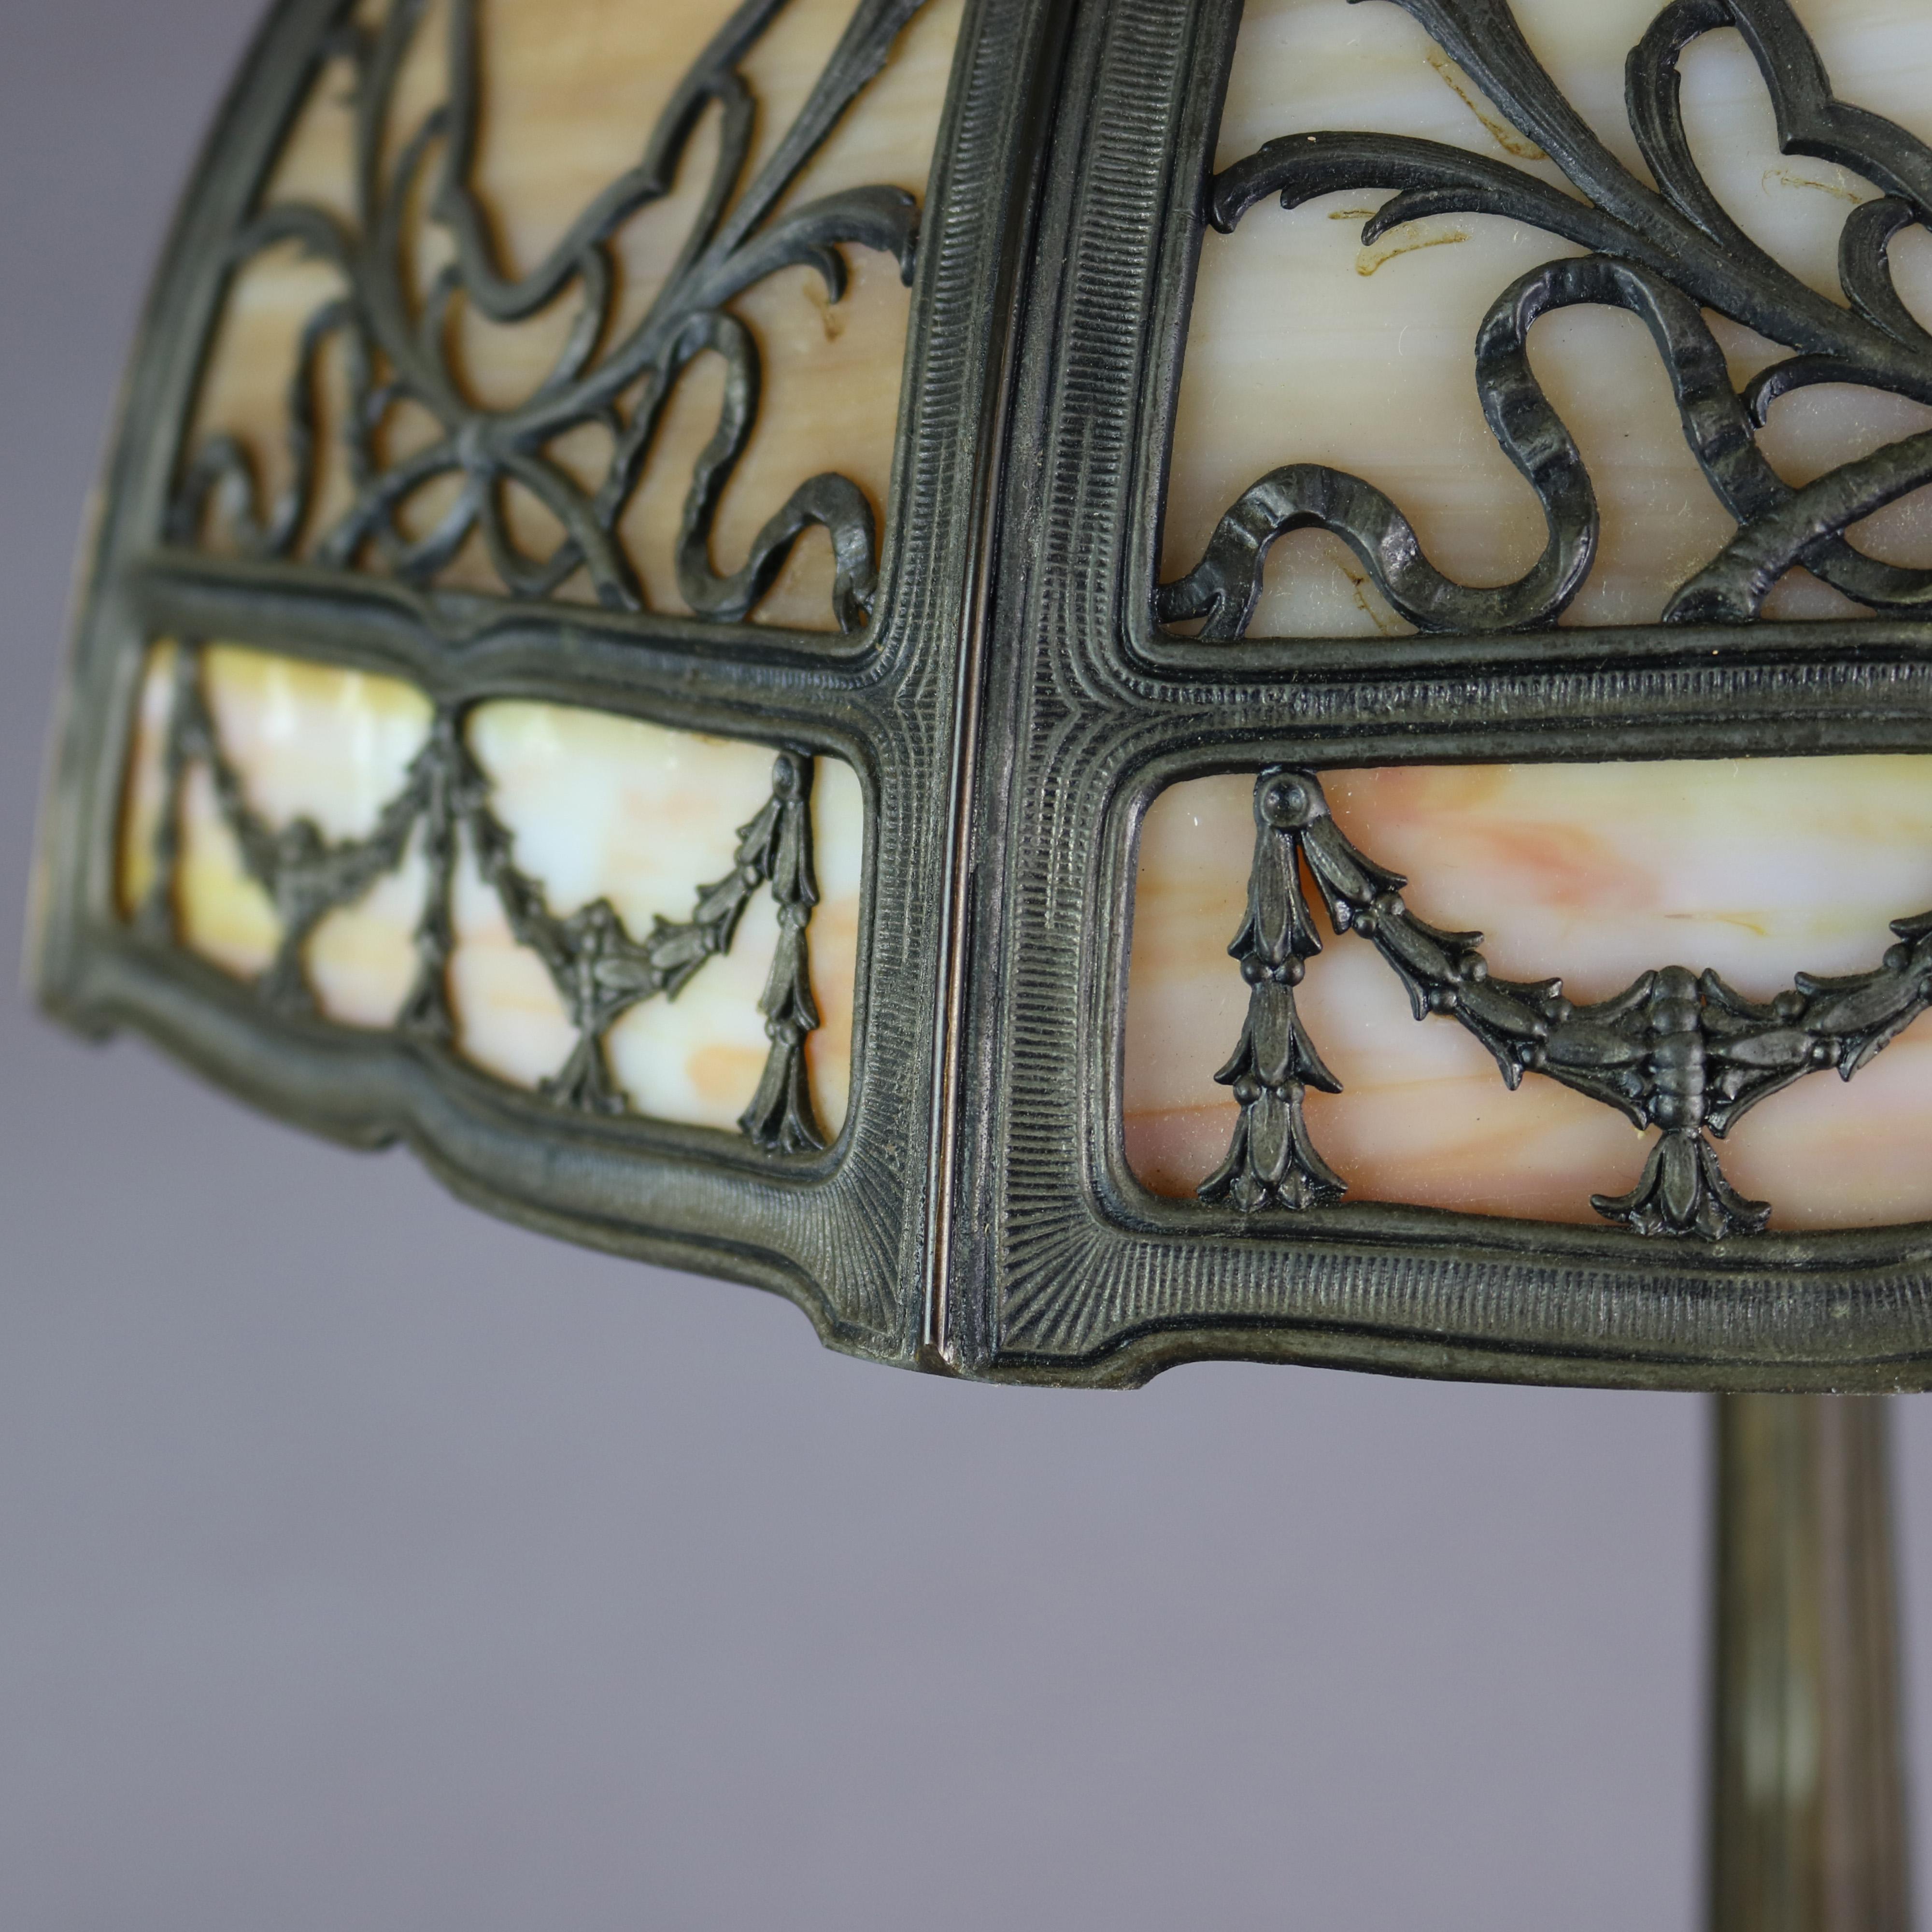 miller lamps antique